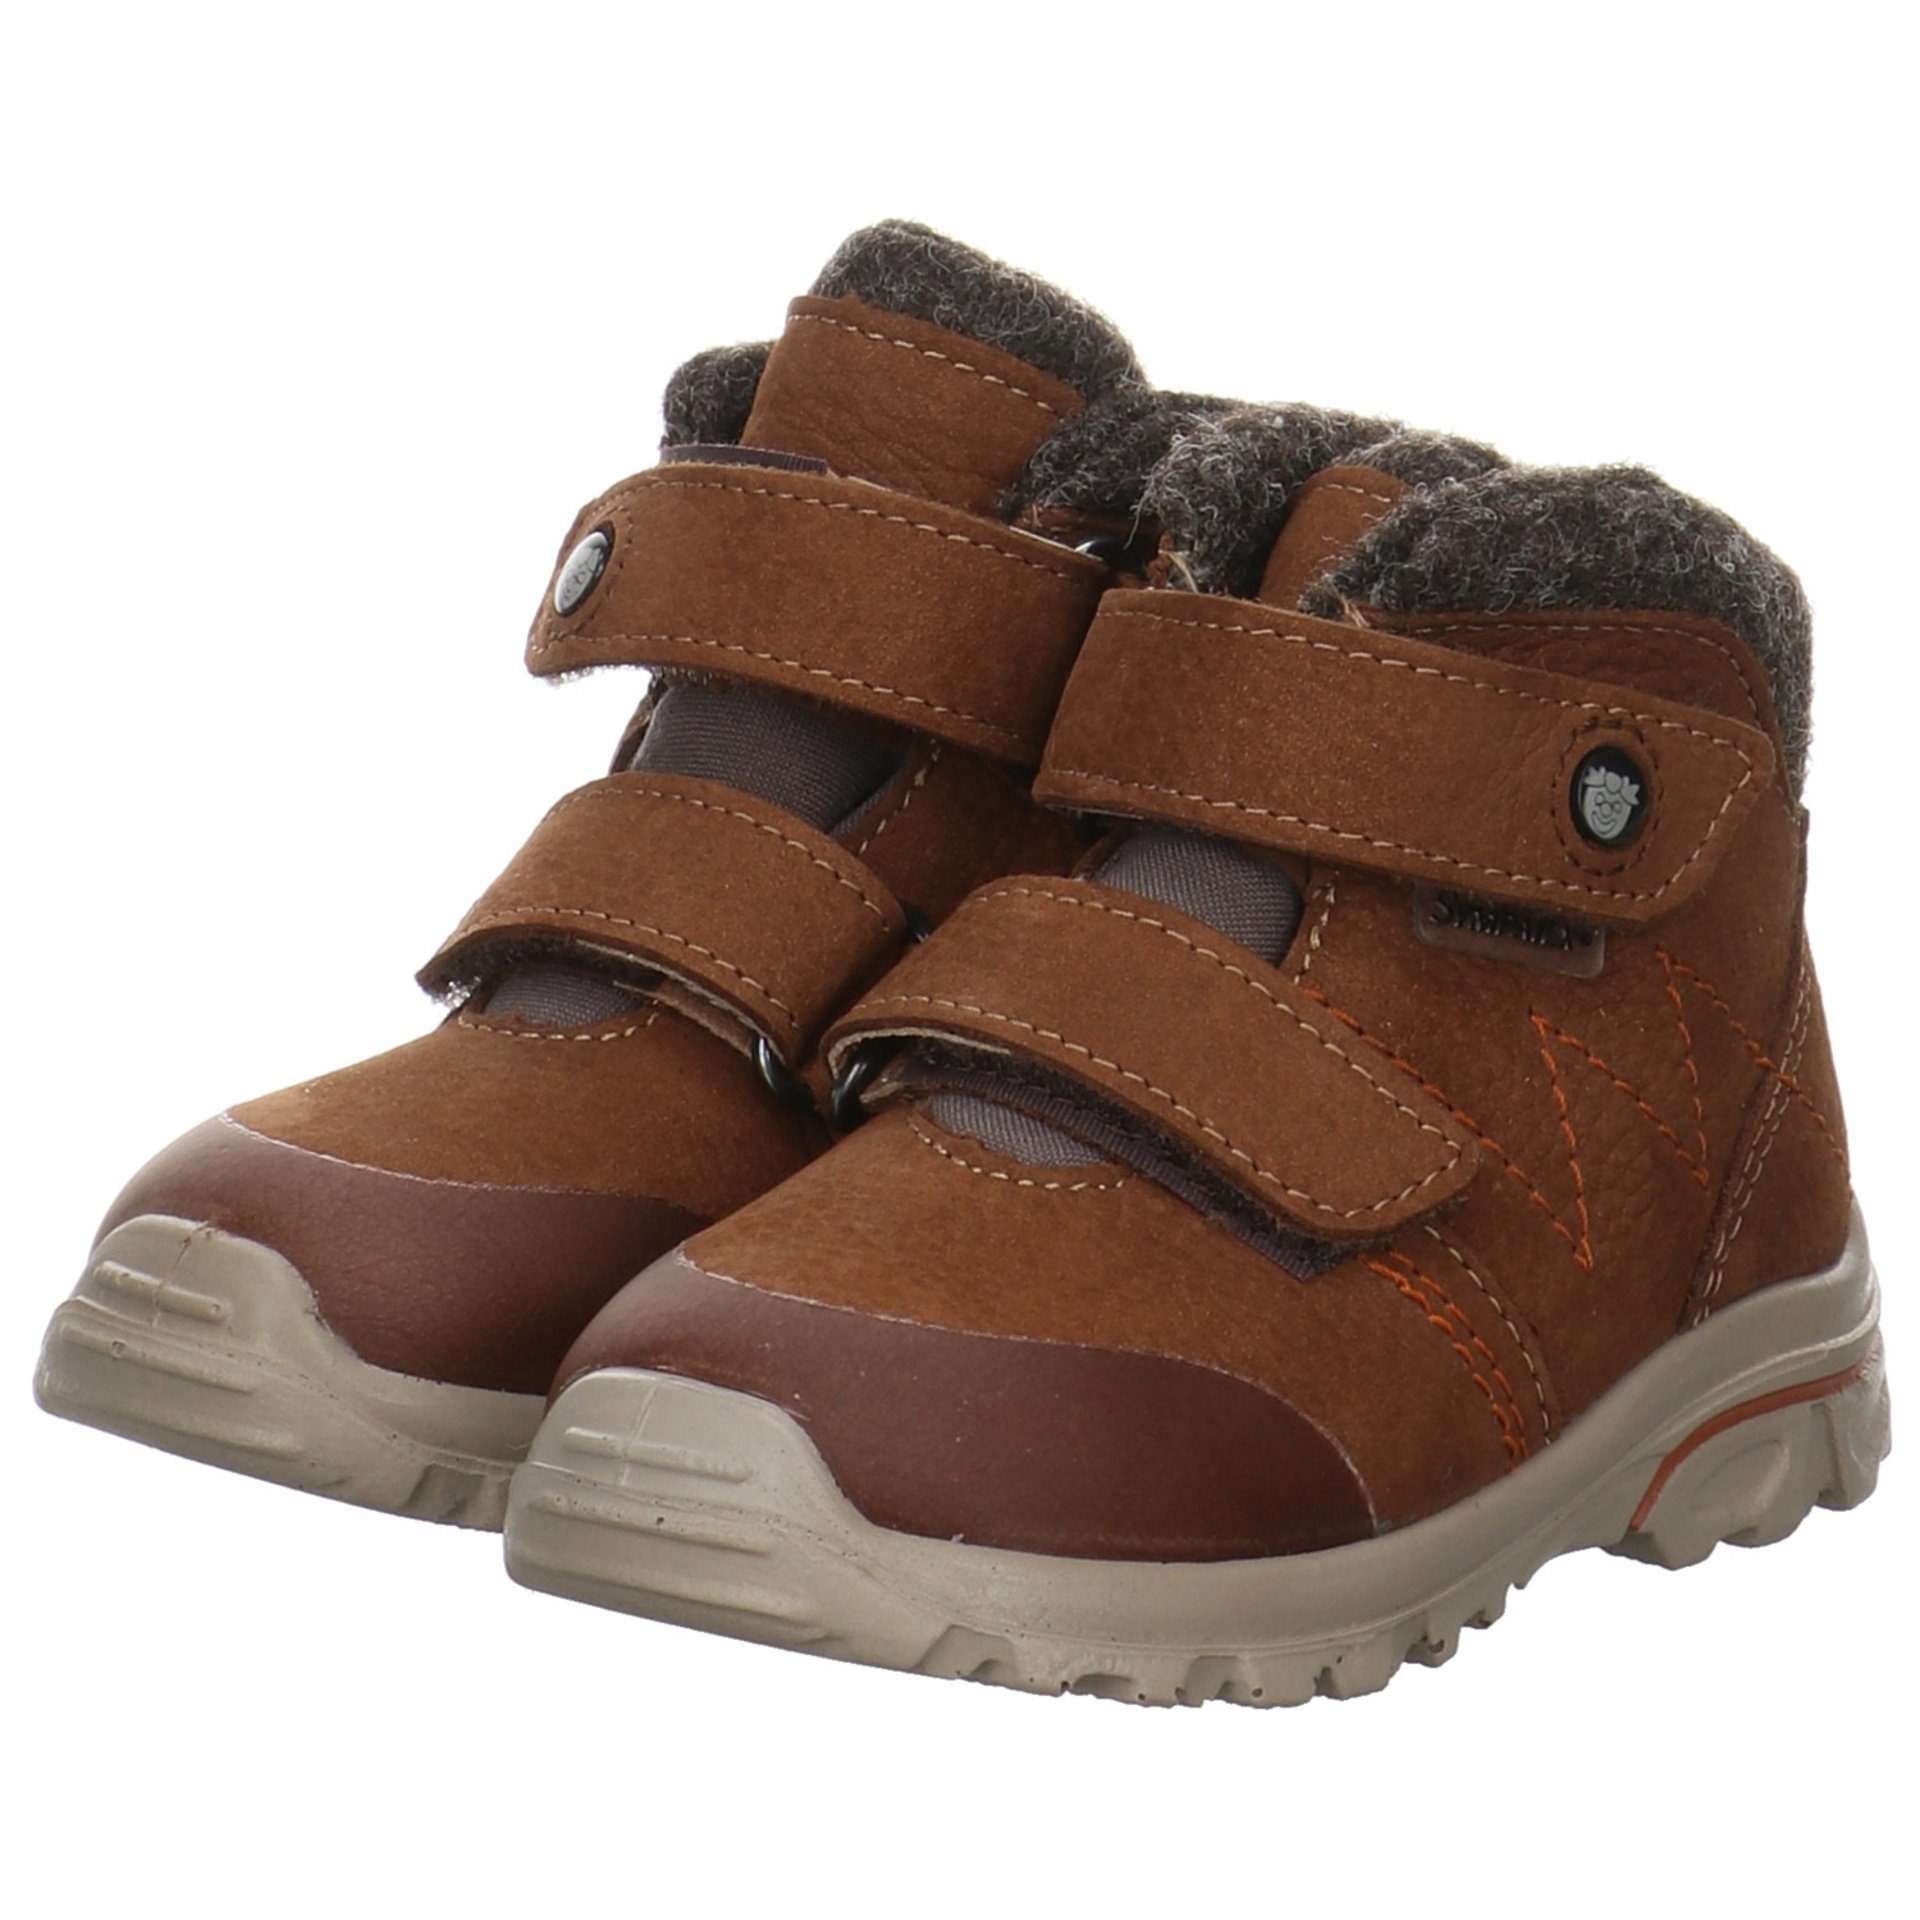 Lauflernschuhe Dario Baby Krabbelschuhe Boots curry Ricosta Leder-/Textilkombination Lauflernschuh